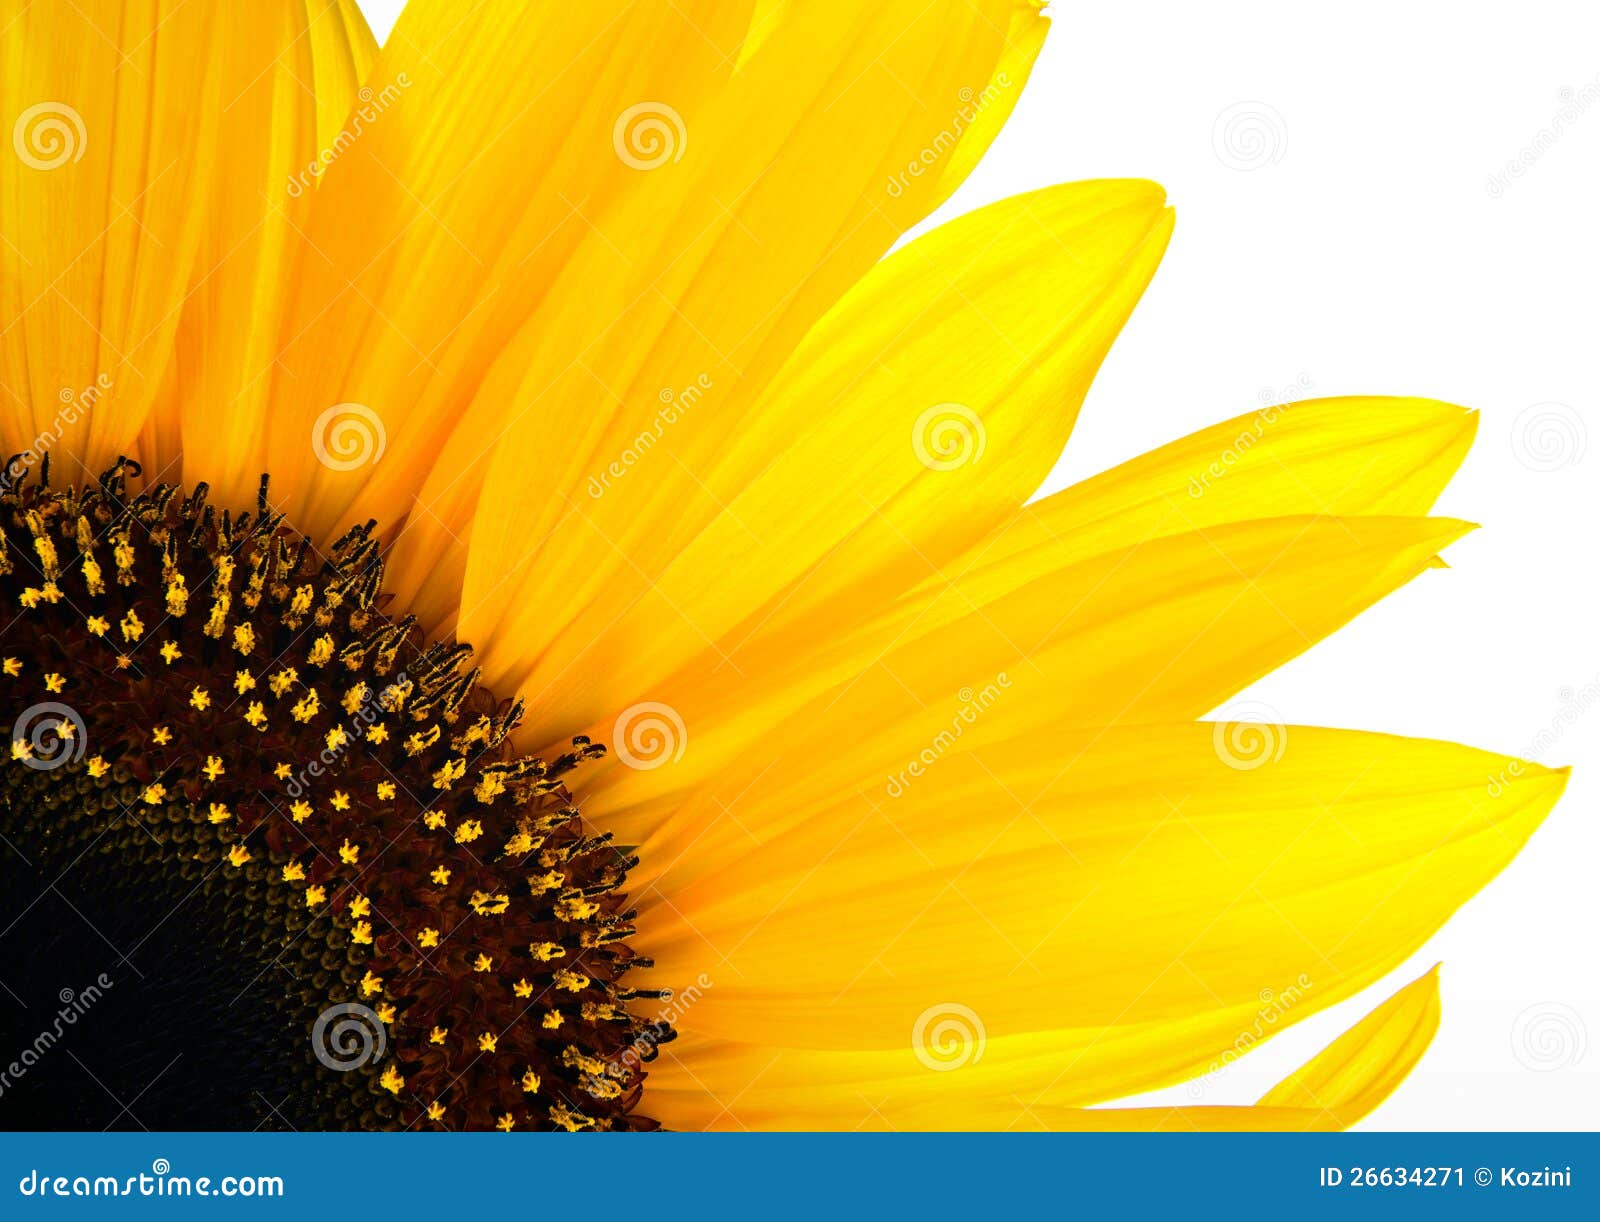 sun flower background